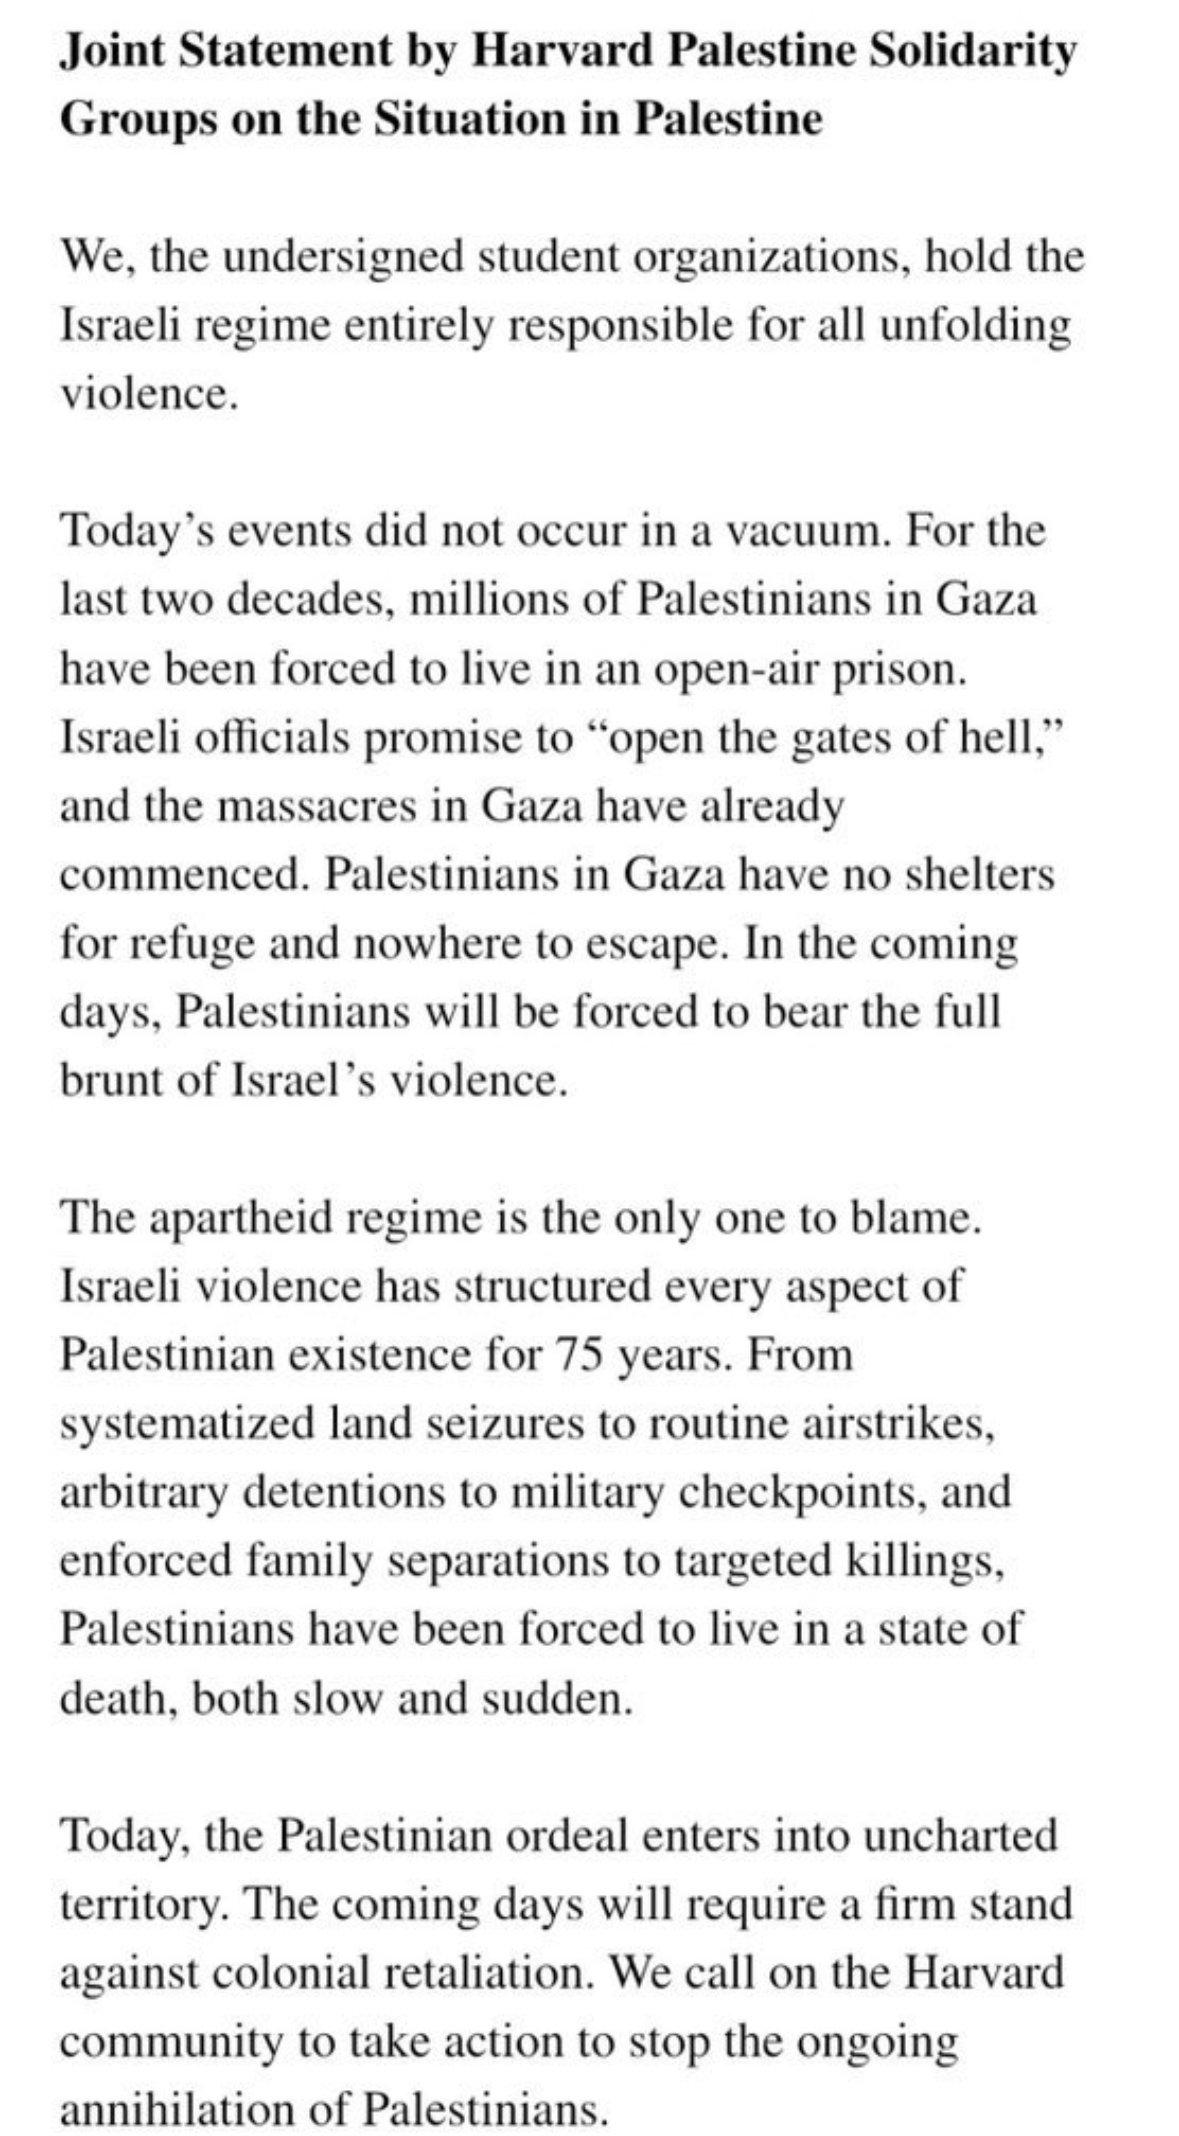 “팔레스타인은 책임없다” 선언한 하버드 학생단체들.jpg